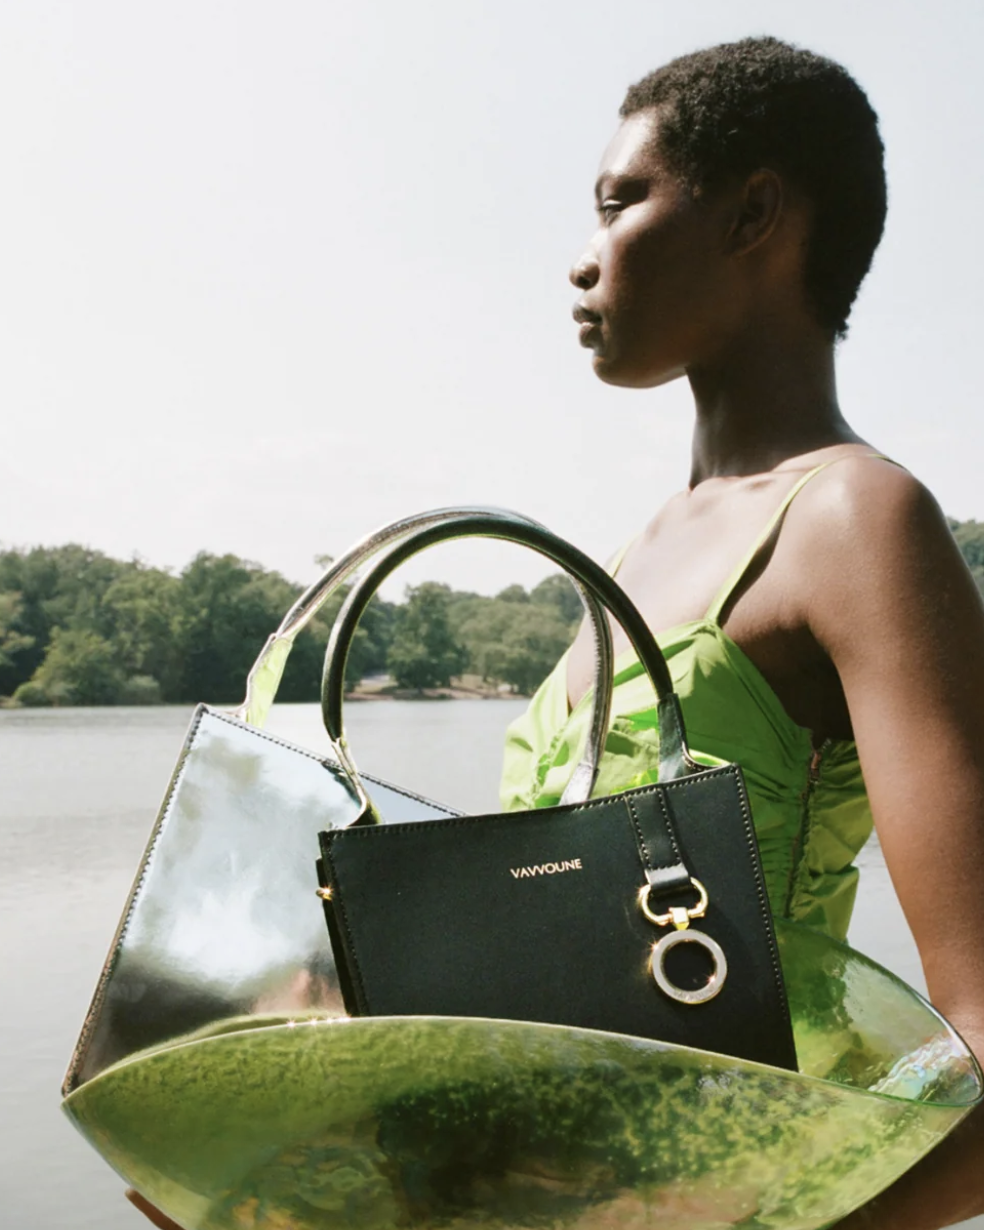 black woman with handbag